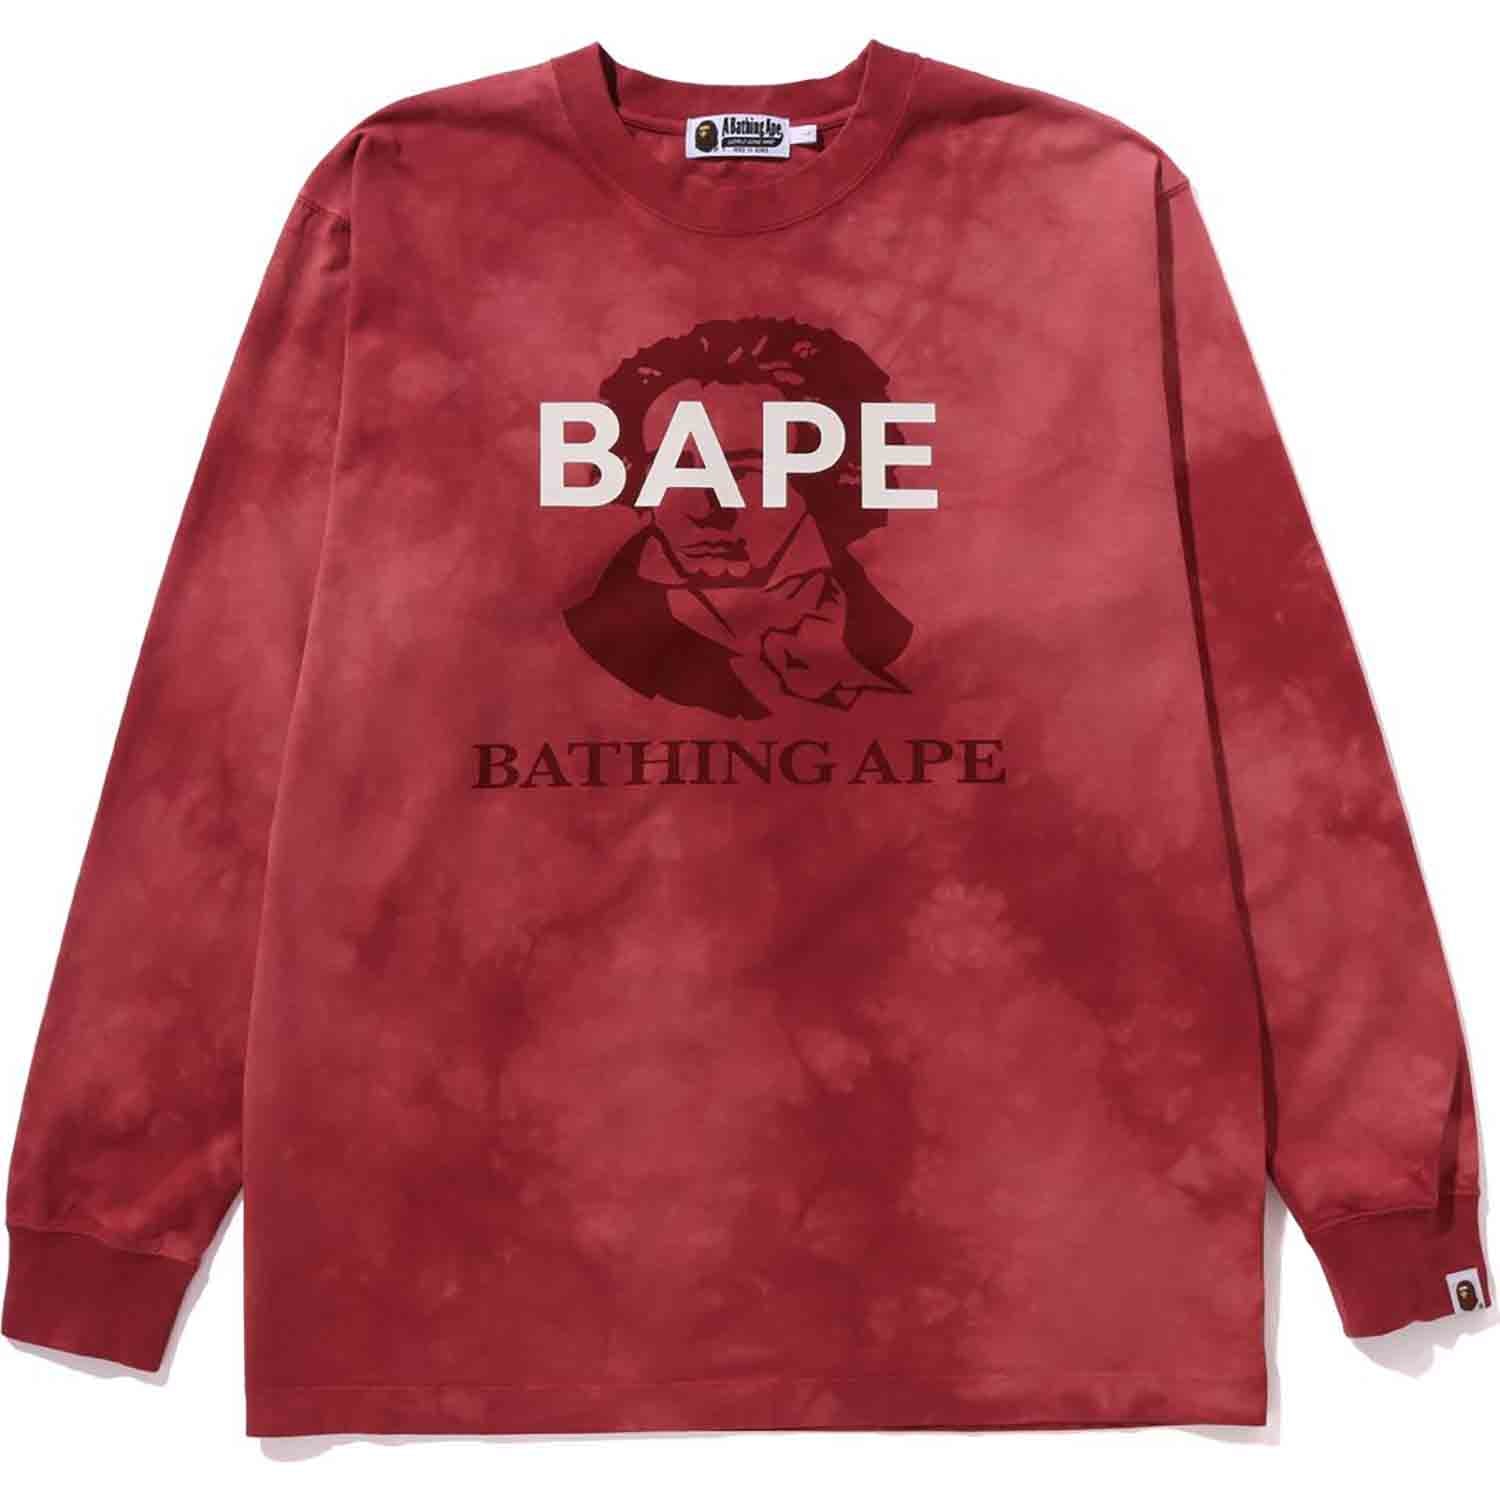 BAPE Tie Dye Bathing Ape Tee Beige